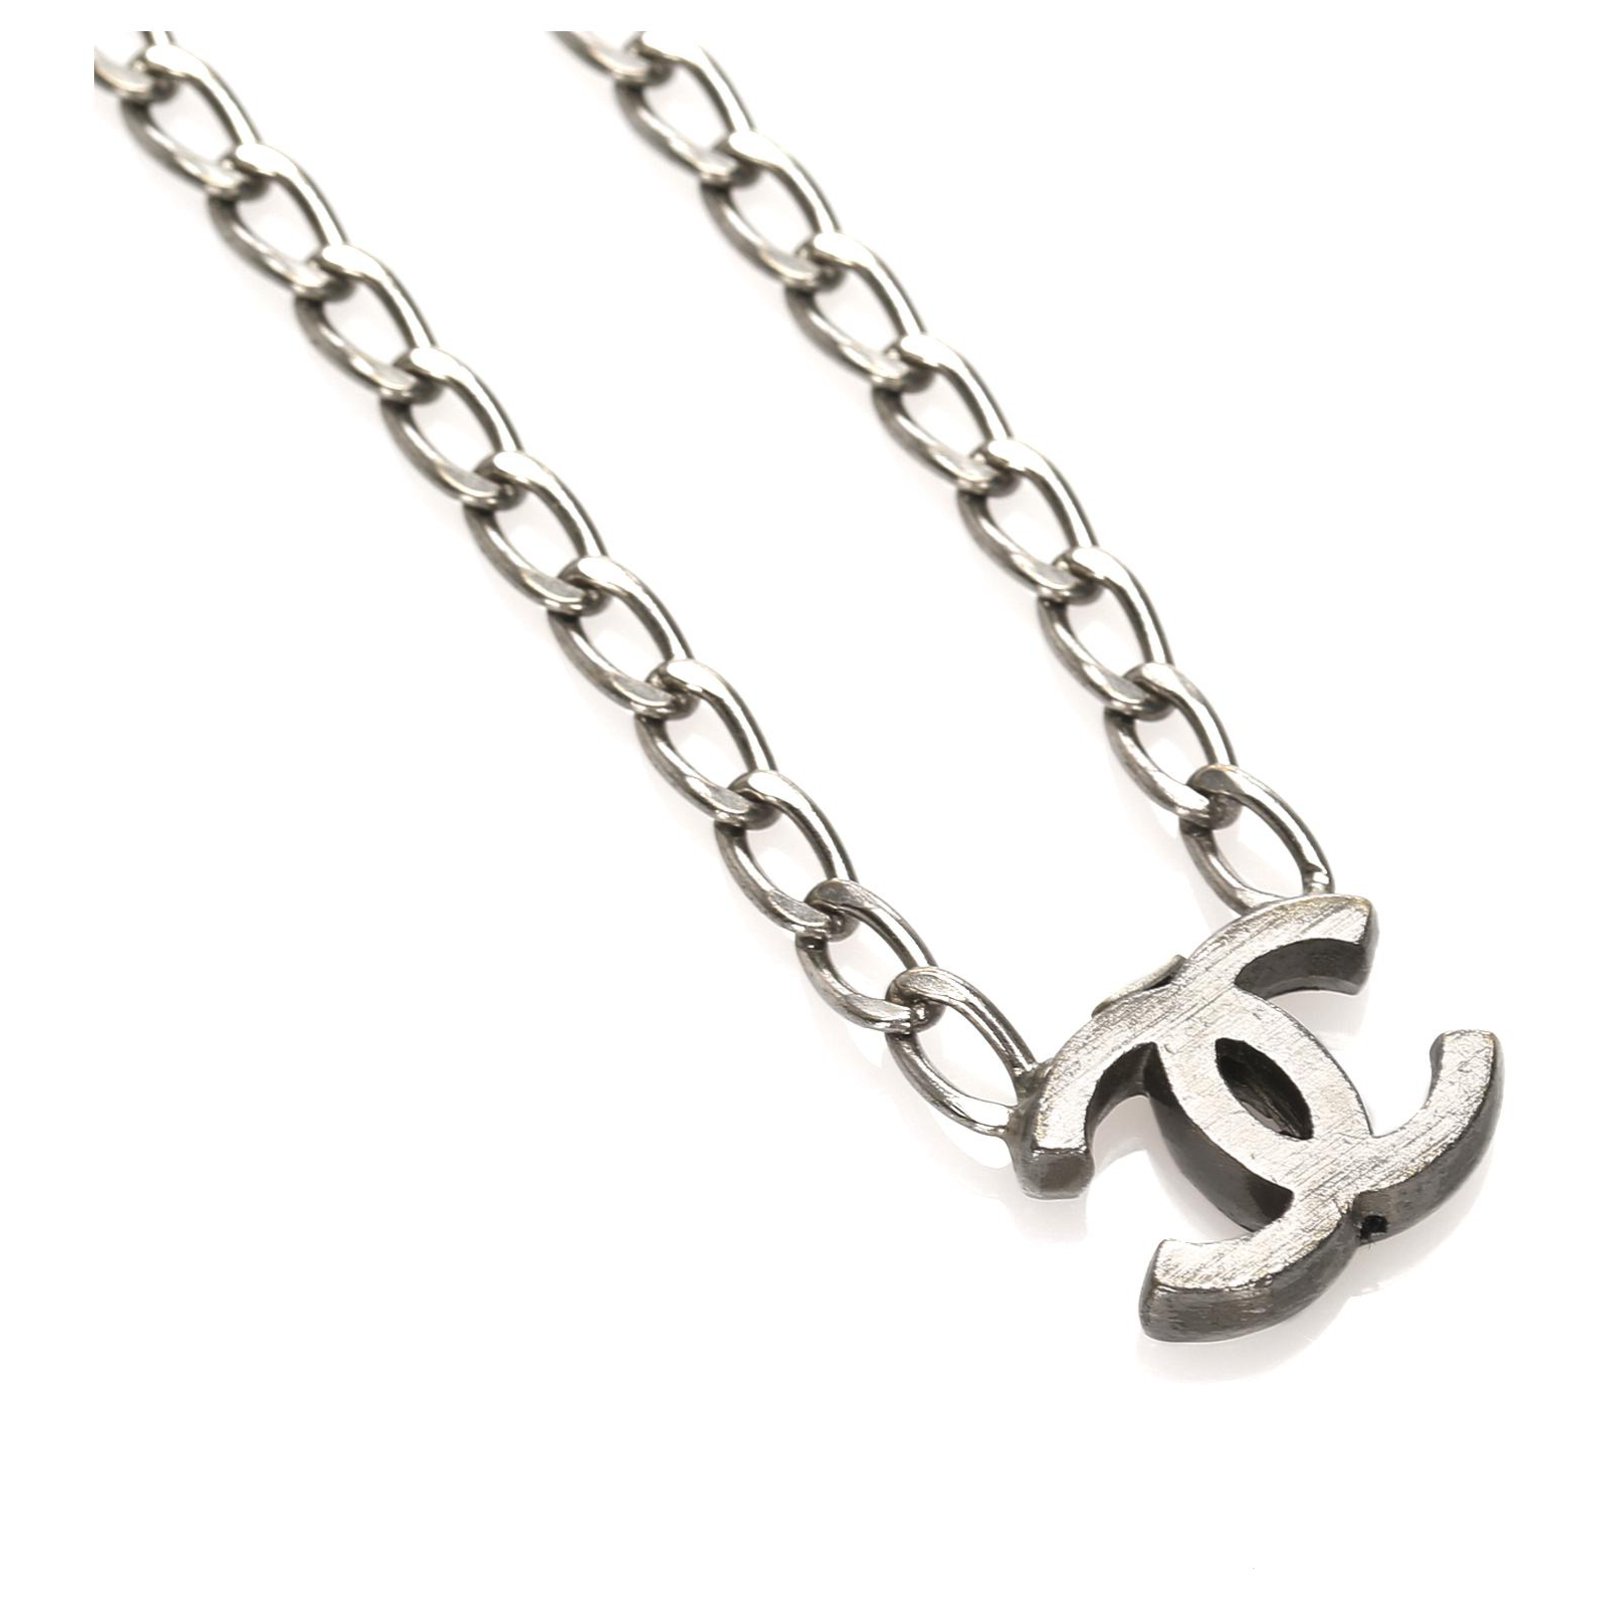 Cc bracelet Chanel Silver in Metal - 34339823